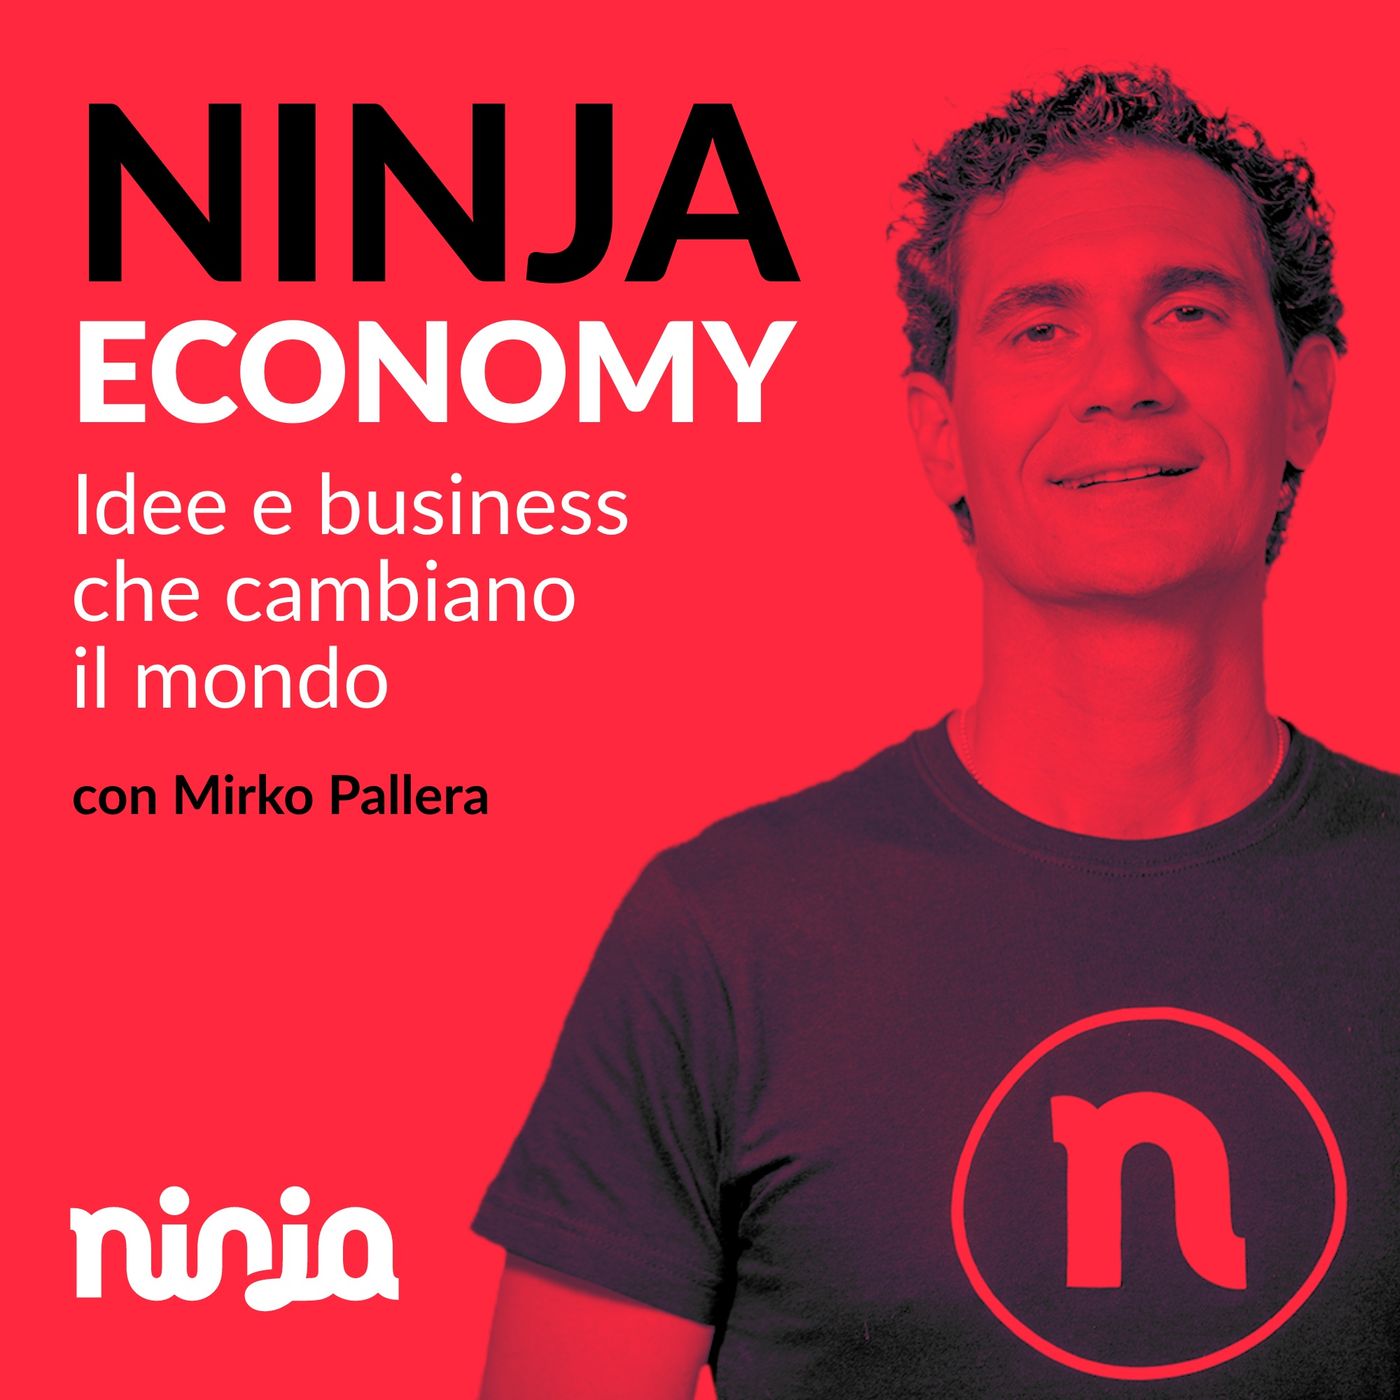 Ninja Economy: Idee e Business che Cambiano il Mondo | Marketing e Motivazione con Mirko Pallera